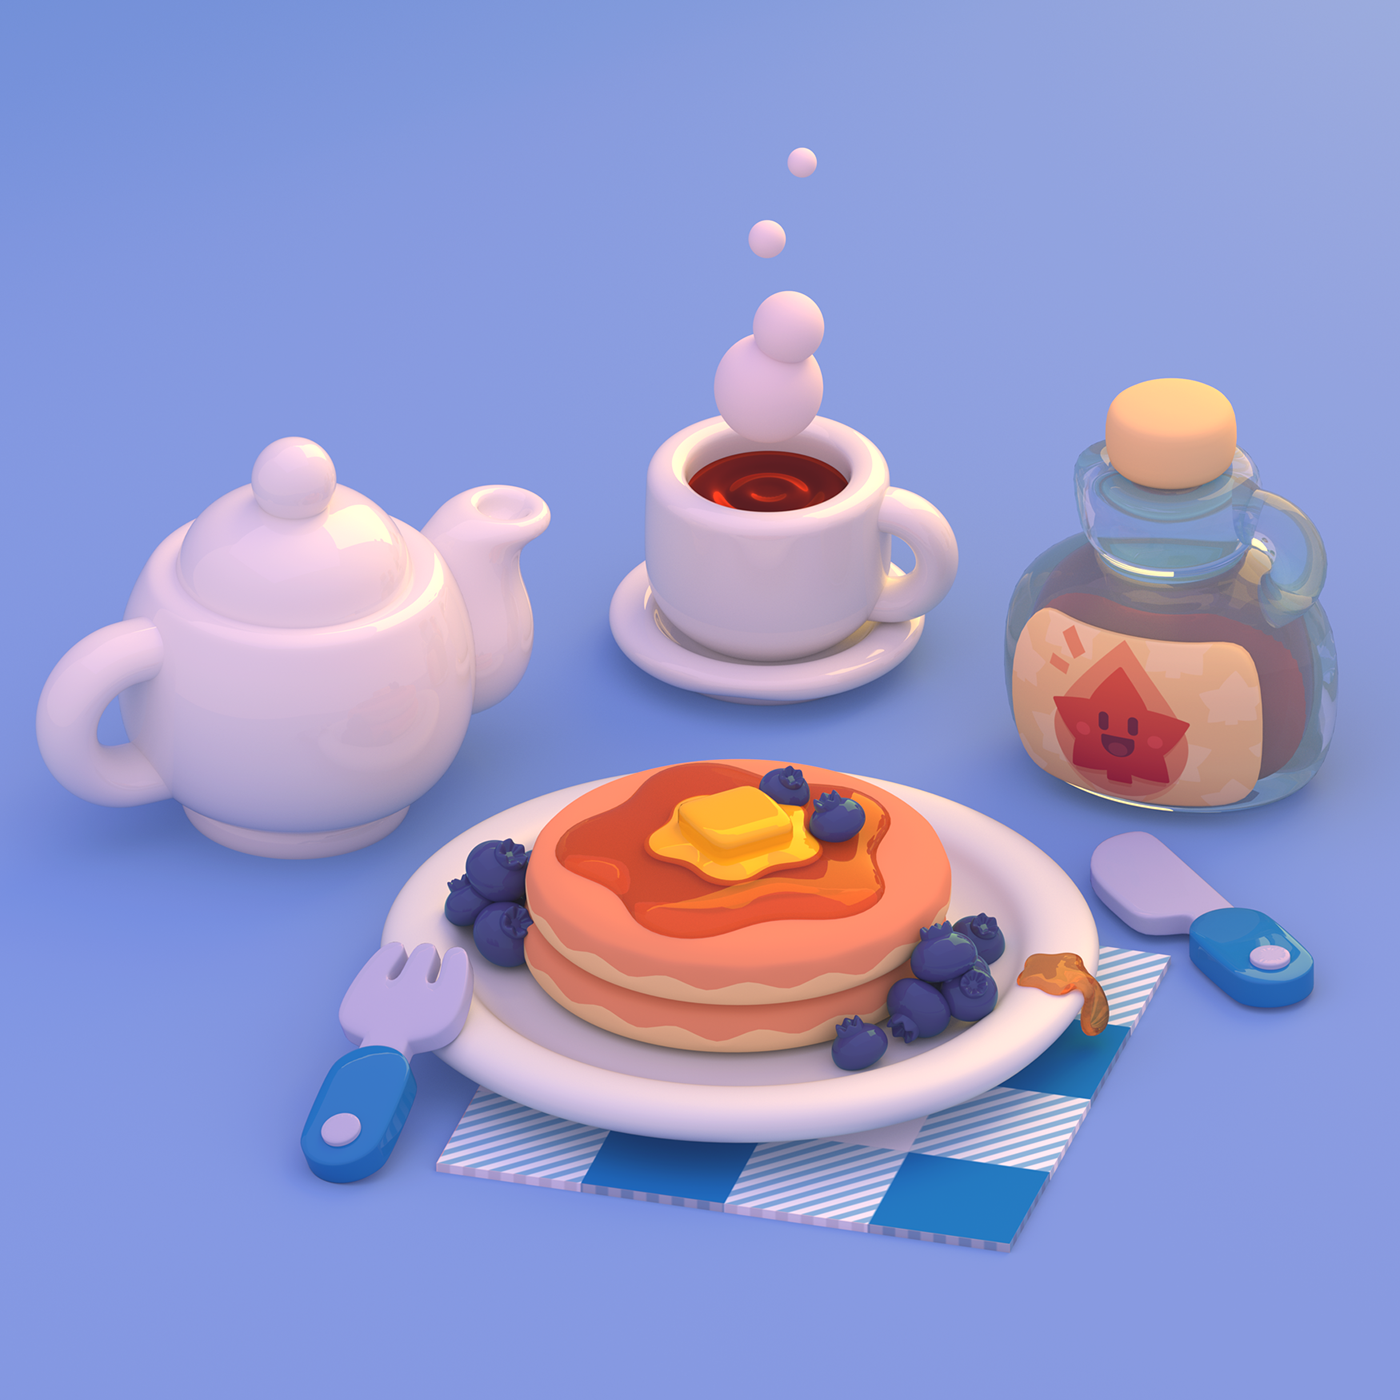 materials 3D breakfast cartoon cute Food  pancakes